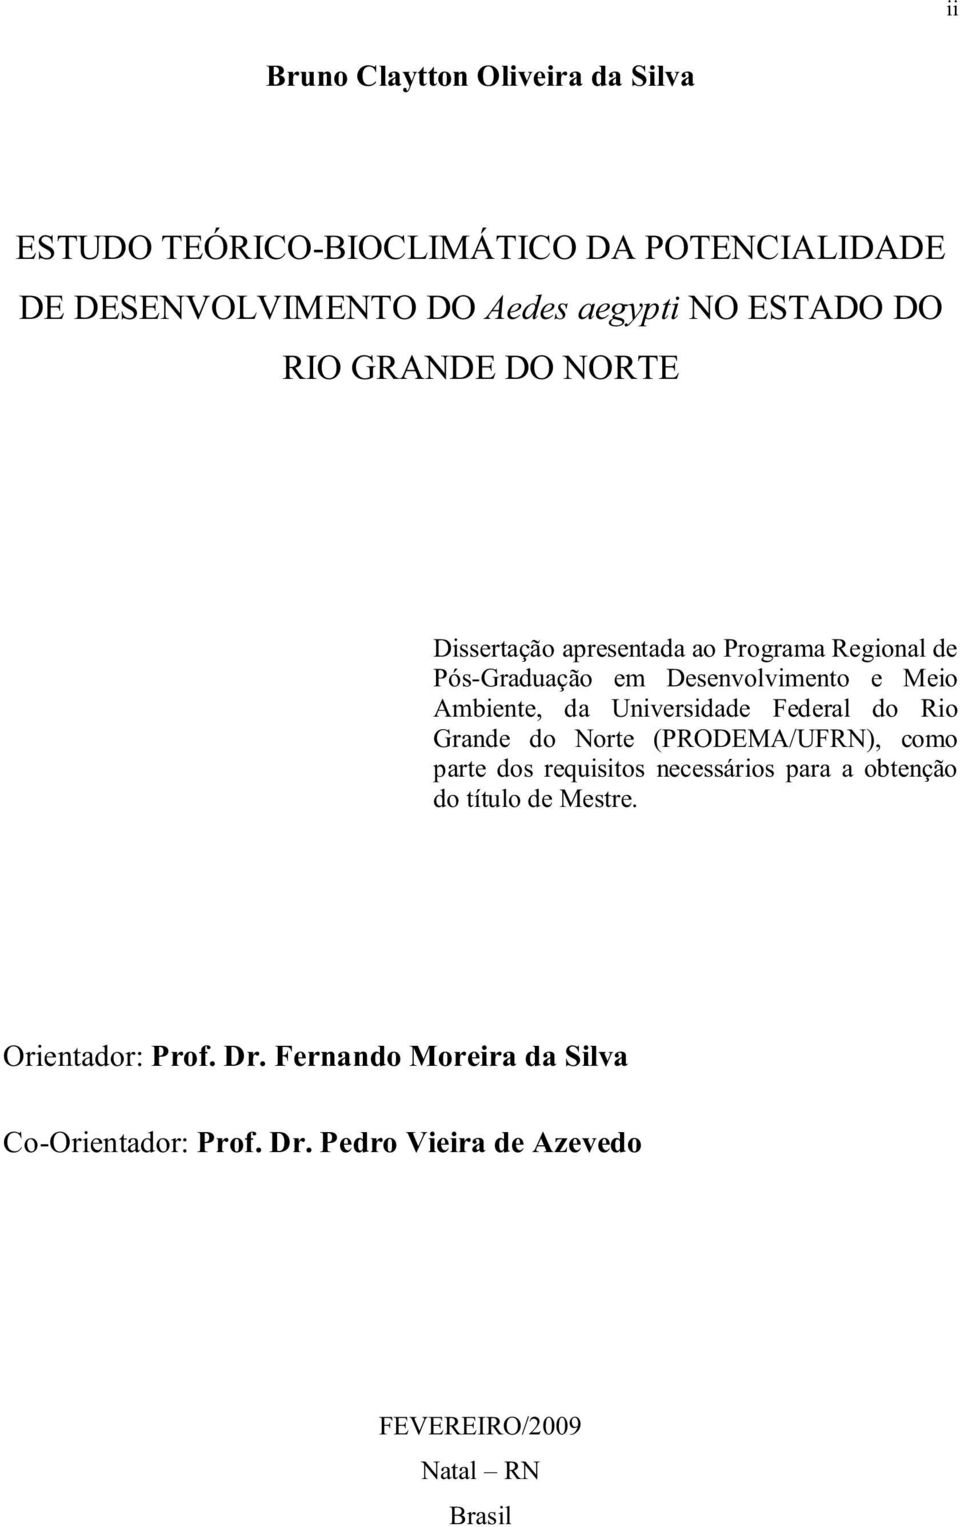 COTONICULTURA FAMILIAR SUSTENTÁVELAAA Dissertação apresentada ao Programa Regional de Pós-Graduação em Desenvolvimento e Meio Ambiente, da Universidade Federal do Rio Grande do Norte